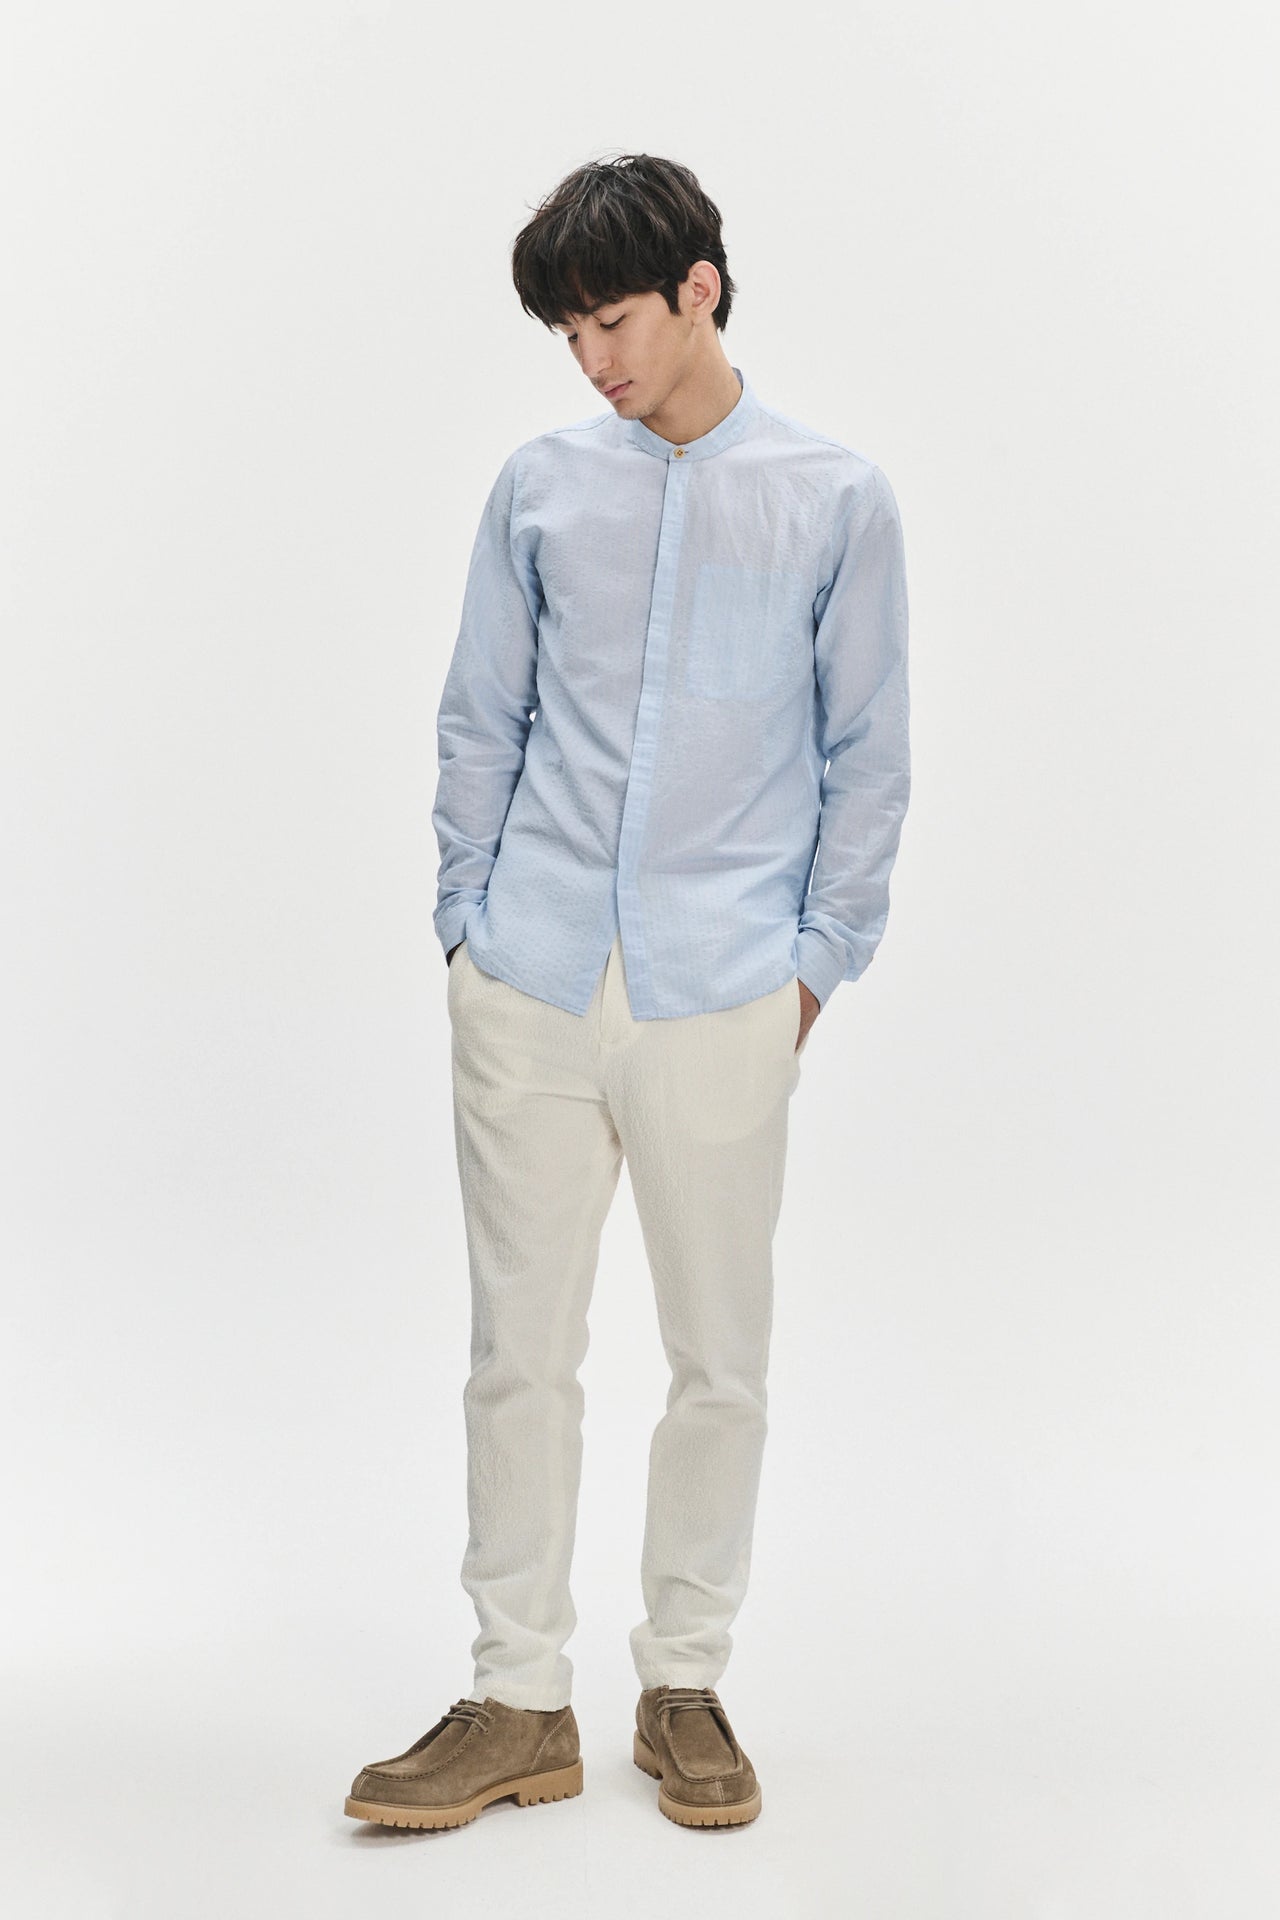 Zen Grandad Collar Shirt in a Light Blue Italian Cotton and Linen Blend Seersucker